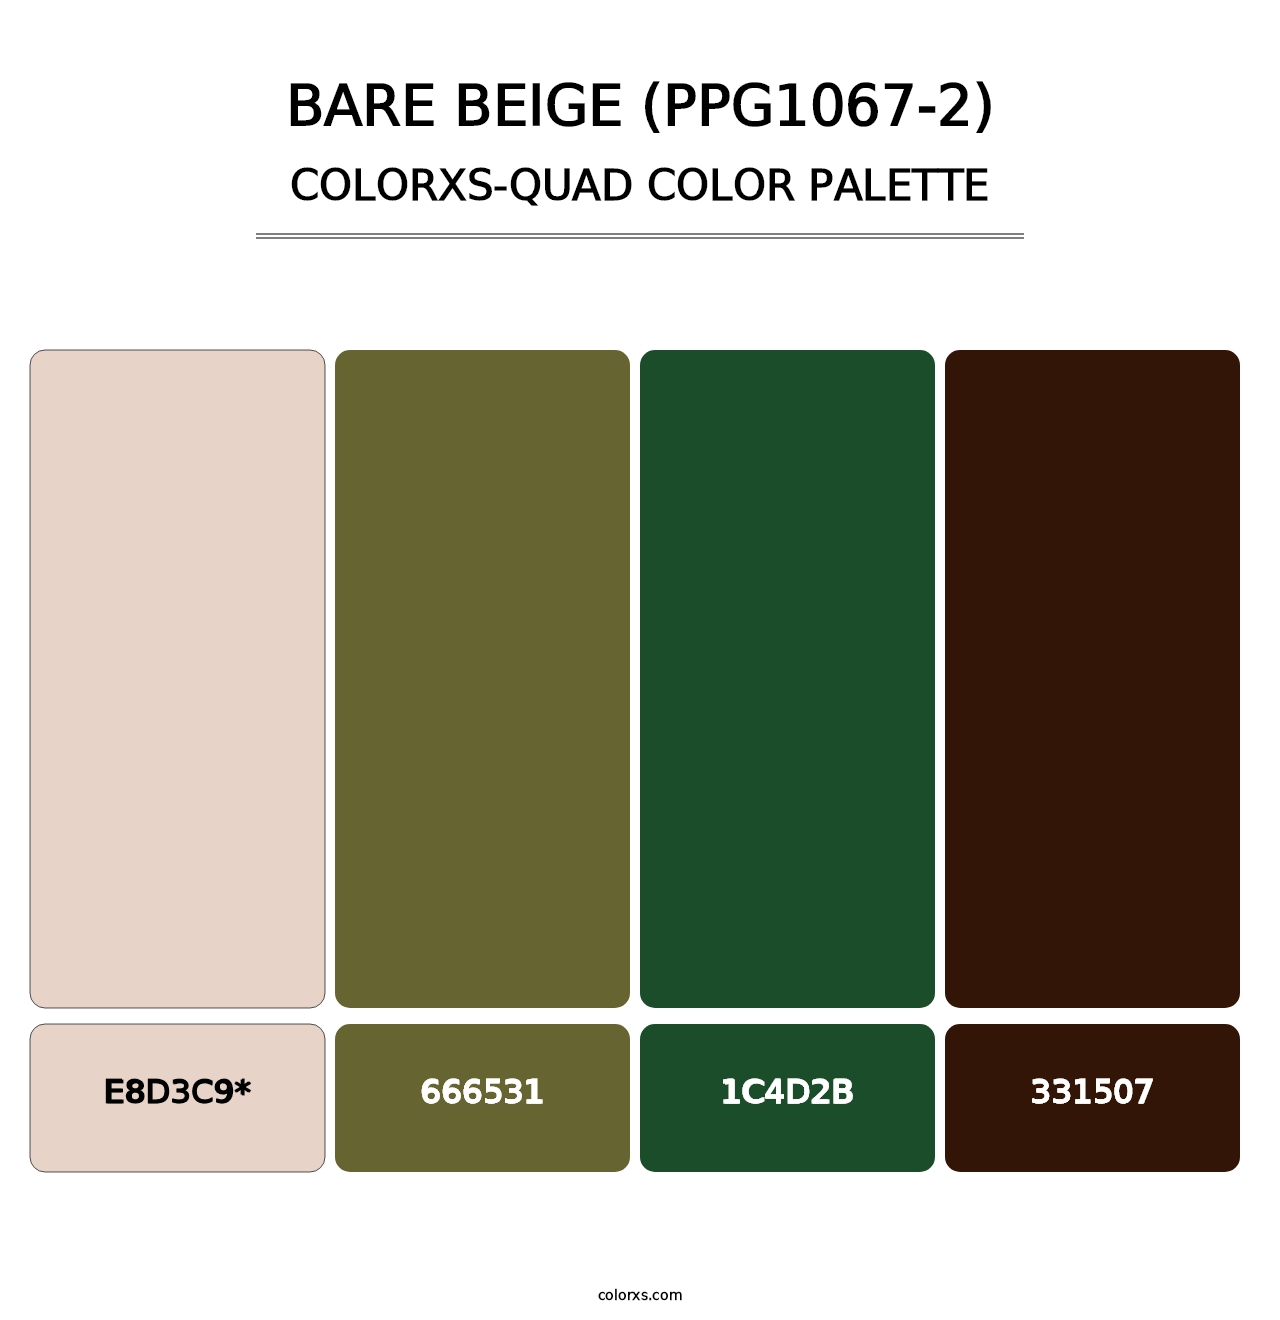 Bare Beige (PPG1067-2) - Colorxs Quad Palette